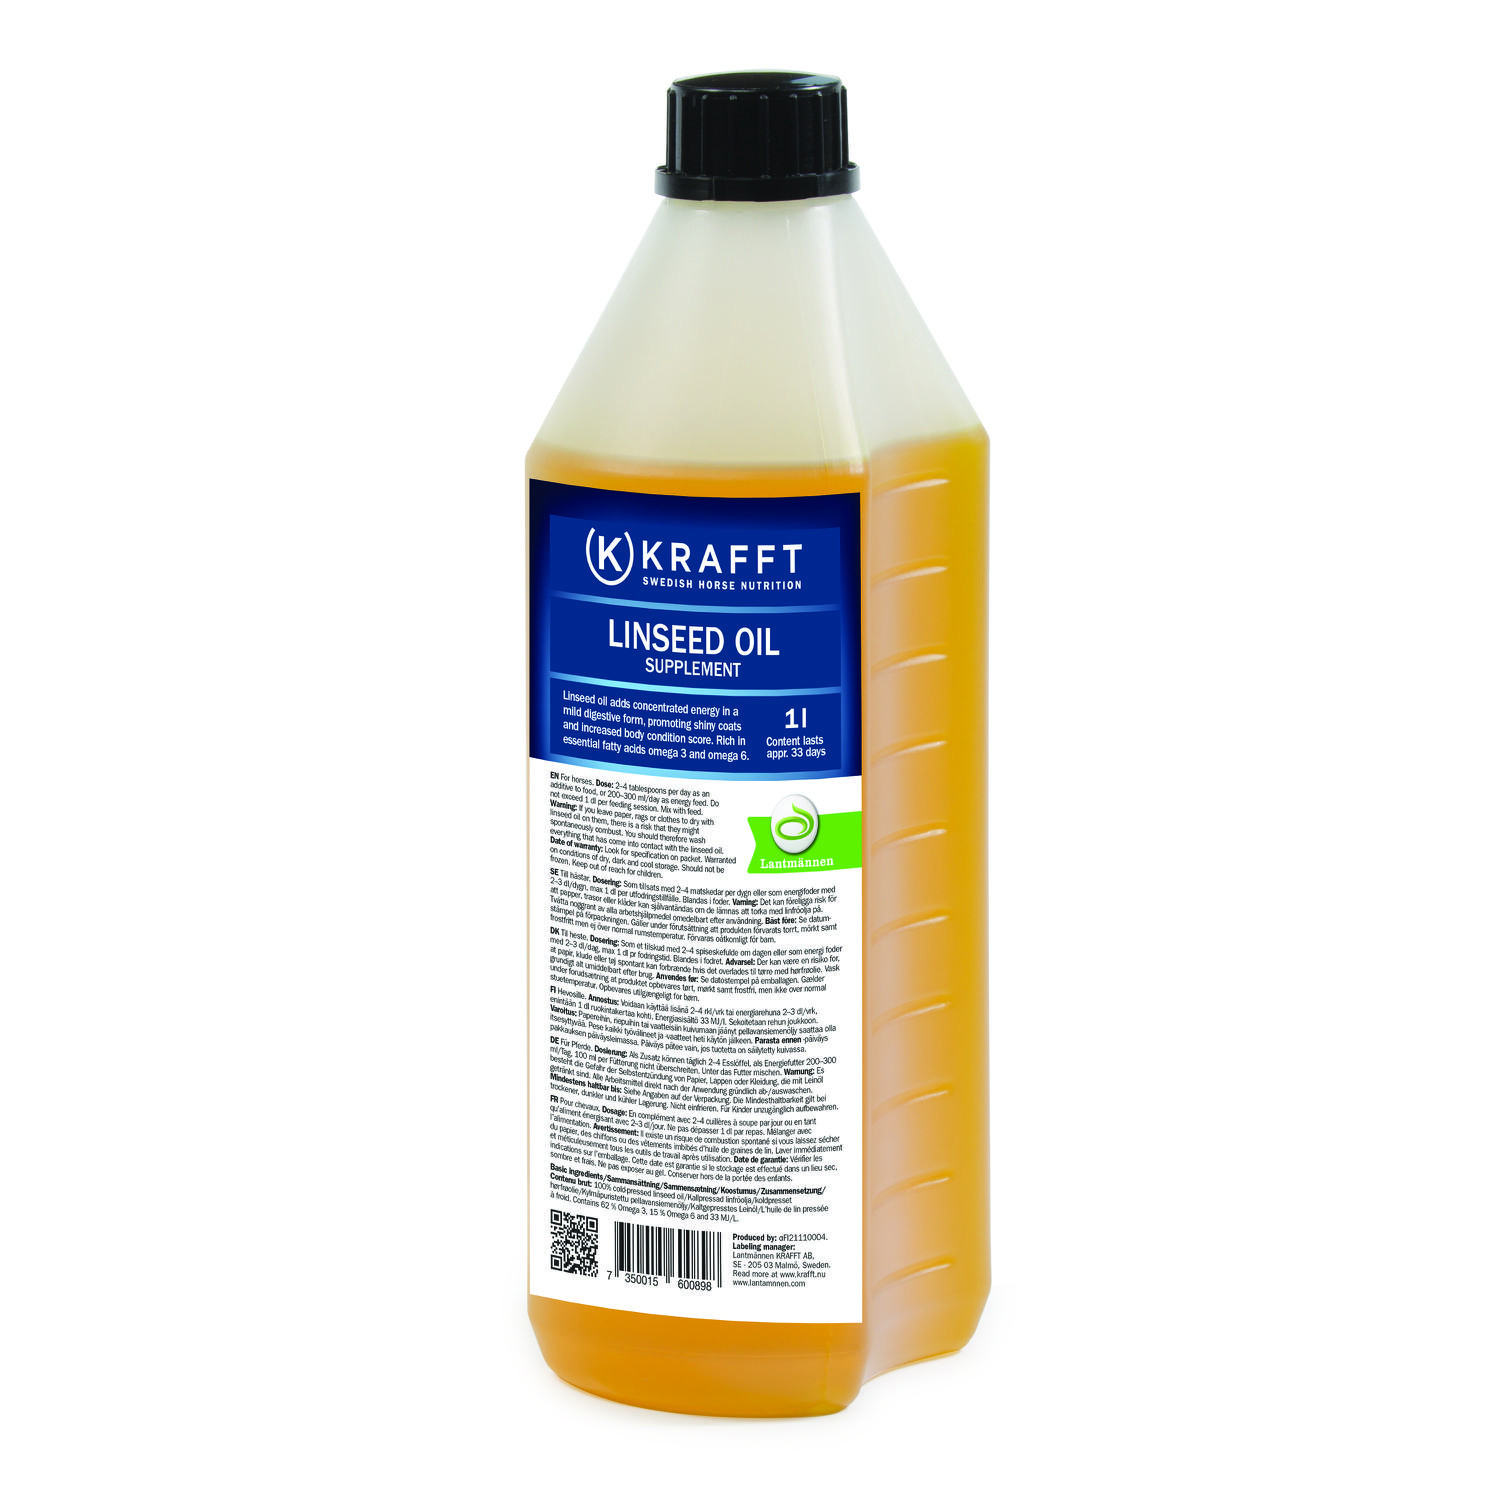 Krafft linseed oil 1 liter